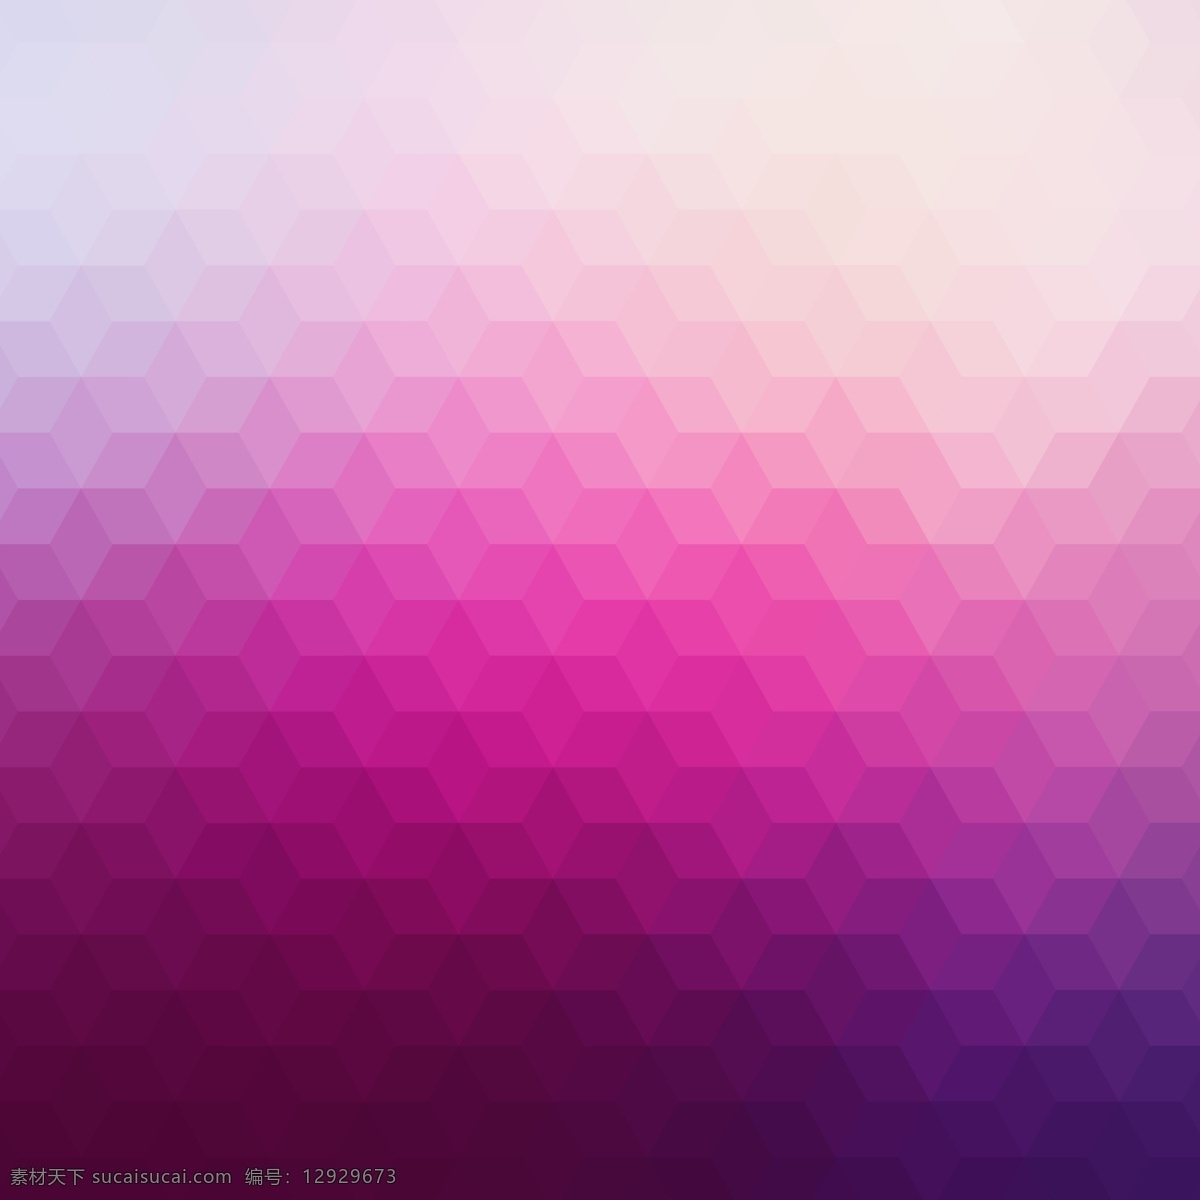 粉红 色调 几何 背景 抽象 三角形 菱形 粉红色 多边形 壁纸 几何背景 矢量背景 三角背景 渐变 粉色背景 效果 钻石 紫色